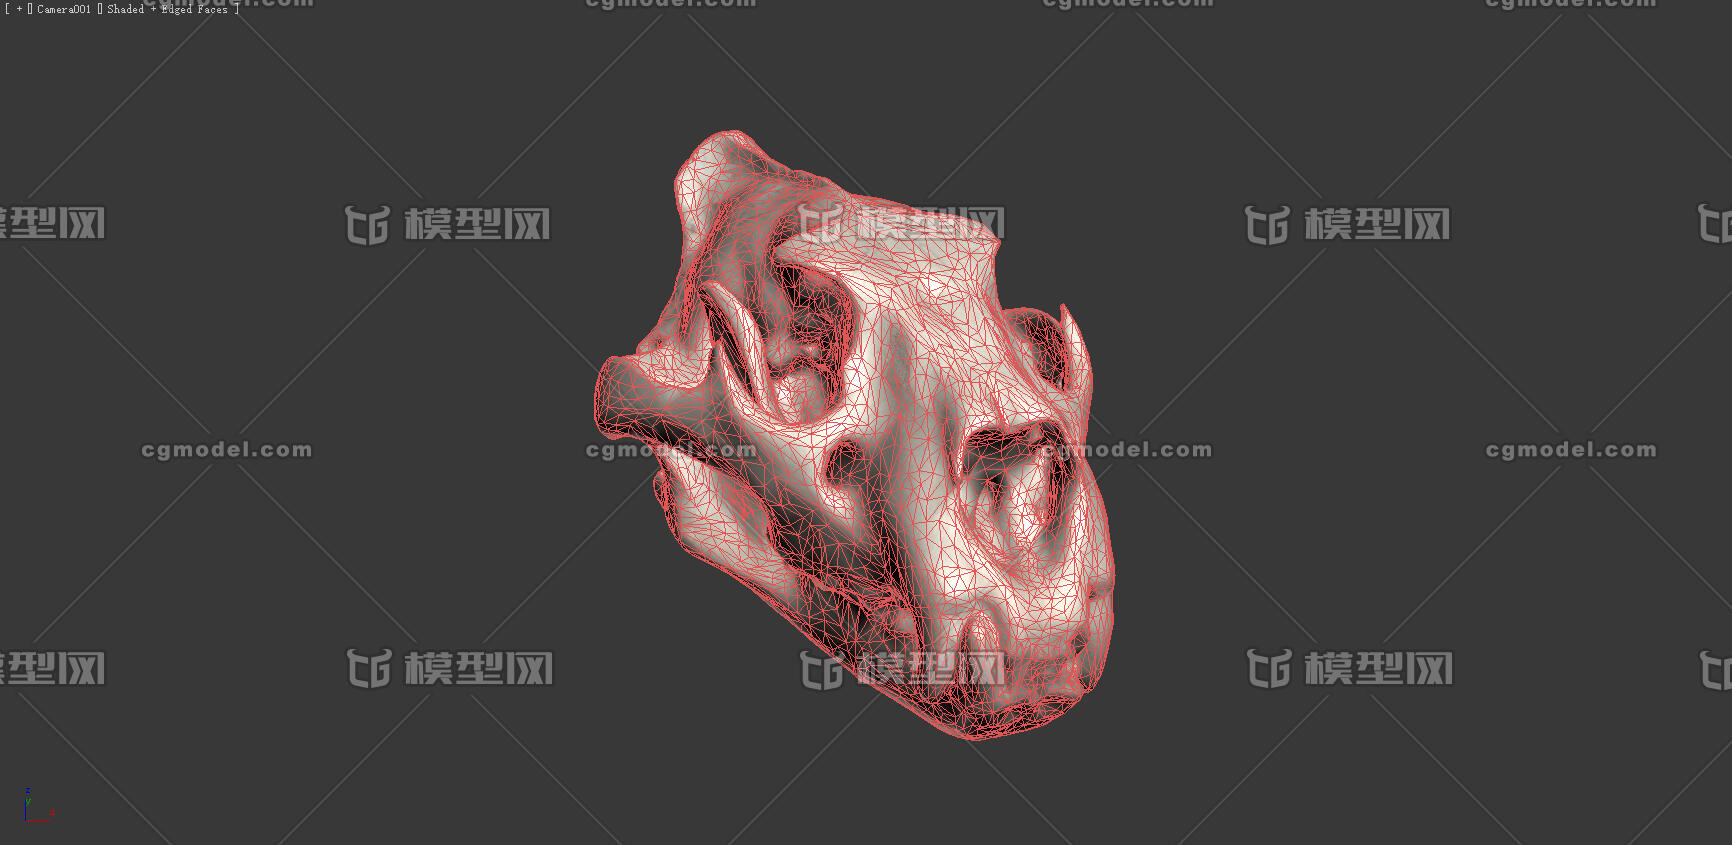 狮子头骨 头骨 骨头 动物头骨 哺乳动物_cg模型zhang